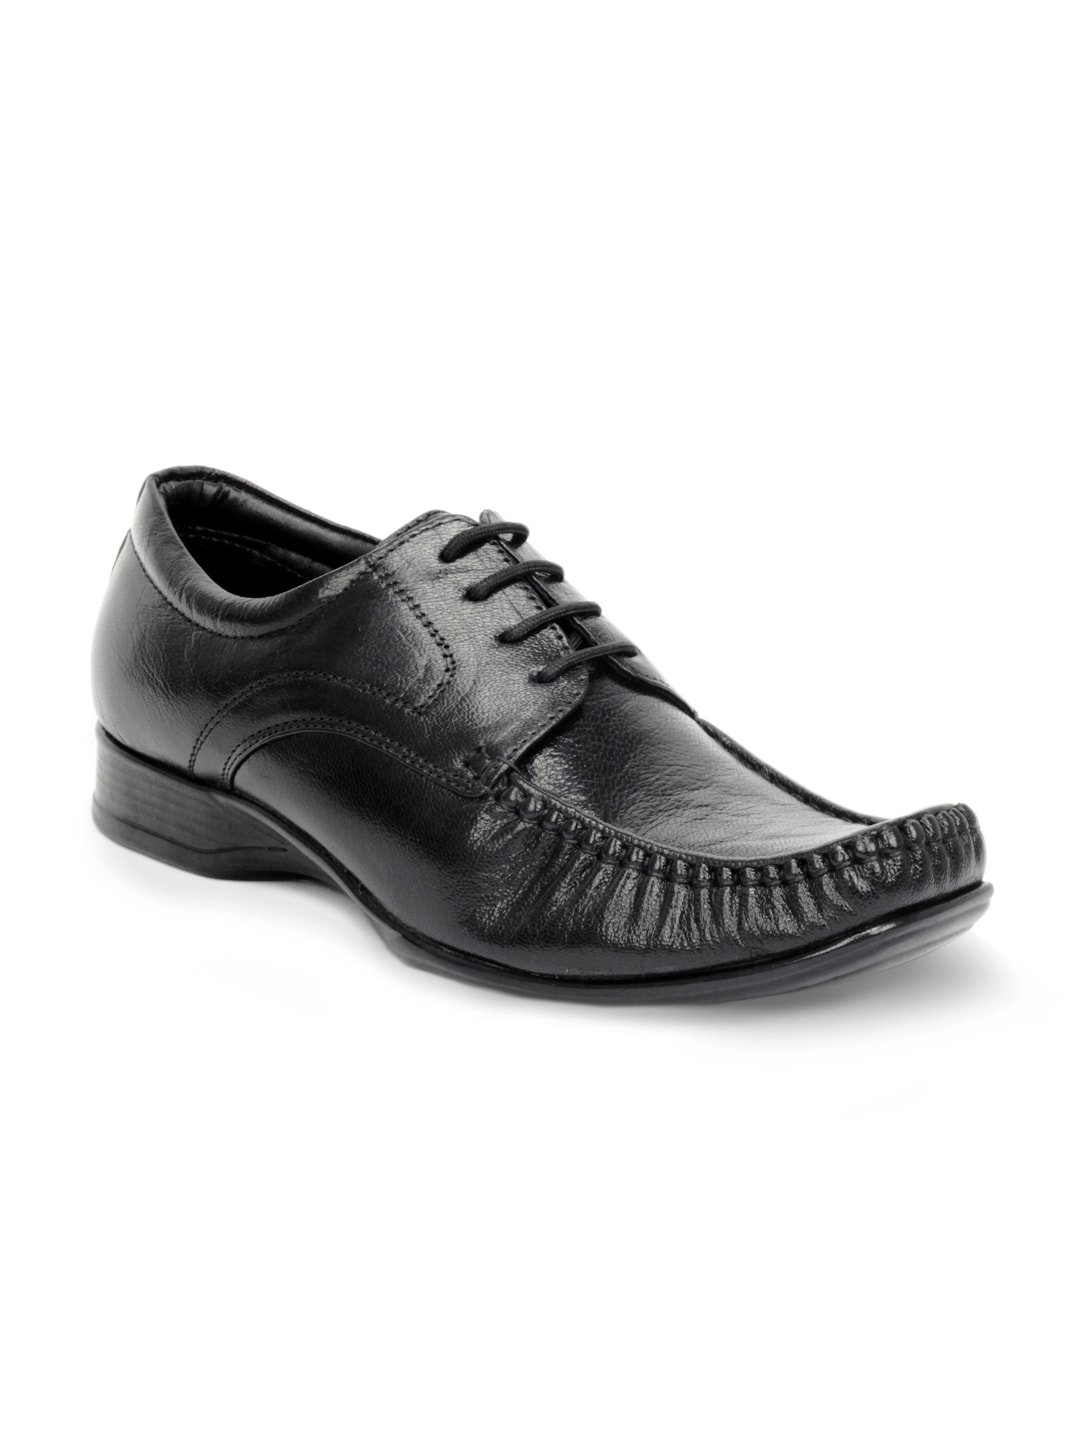 Bata Men Black Mocassino Formal Shoes